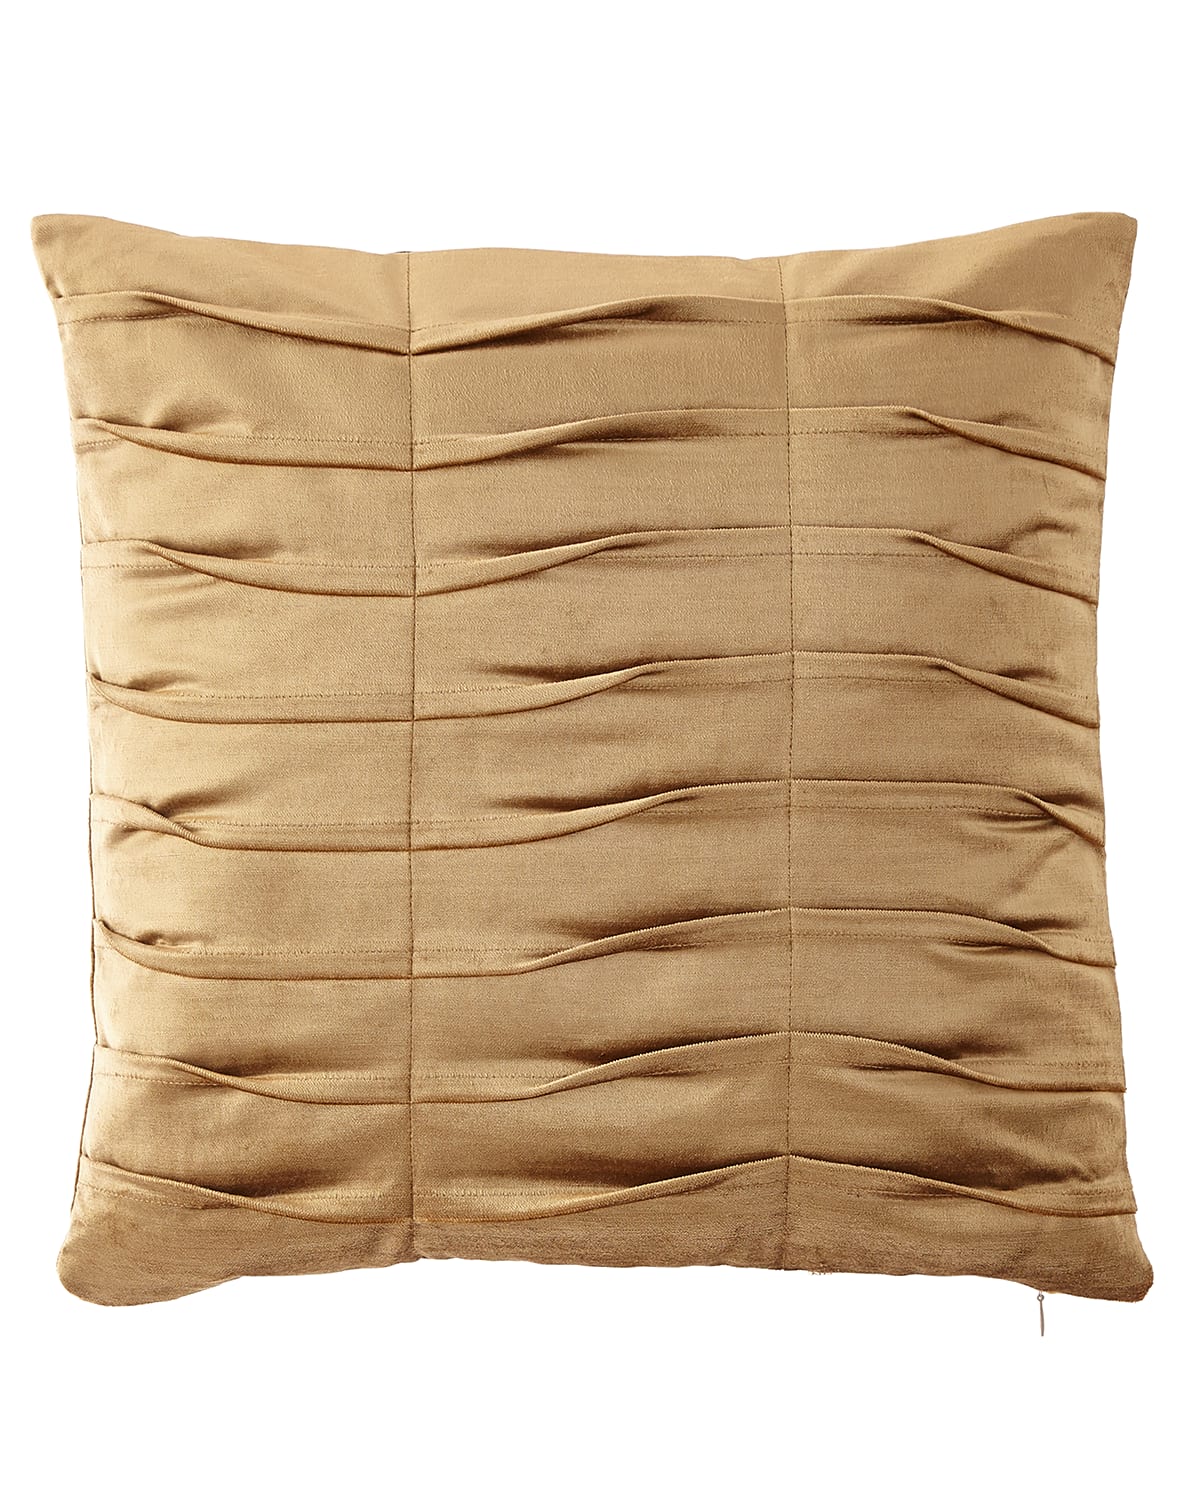 Image Dian Austin Couture Home Emporium Pleated Velvet Boutique Pillow, Gold